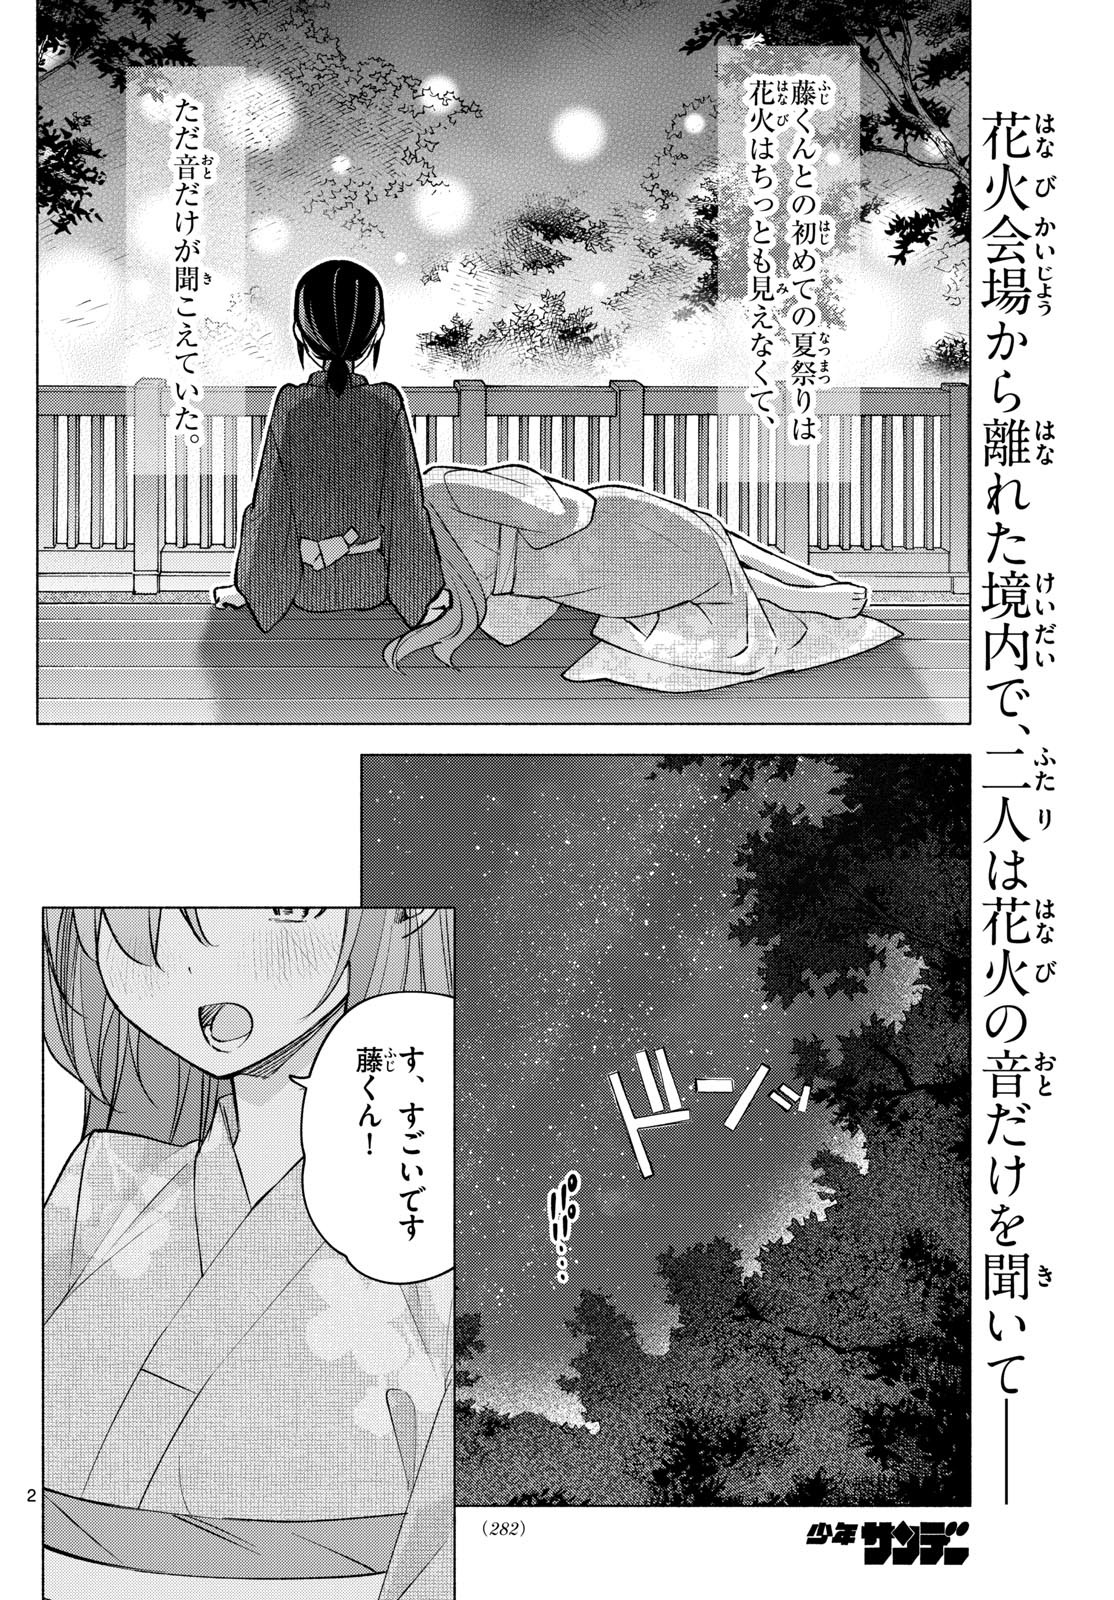 Kimi to Warui Koto ga Shitai - Chapter 050 - Page 2